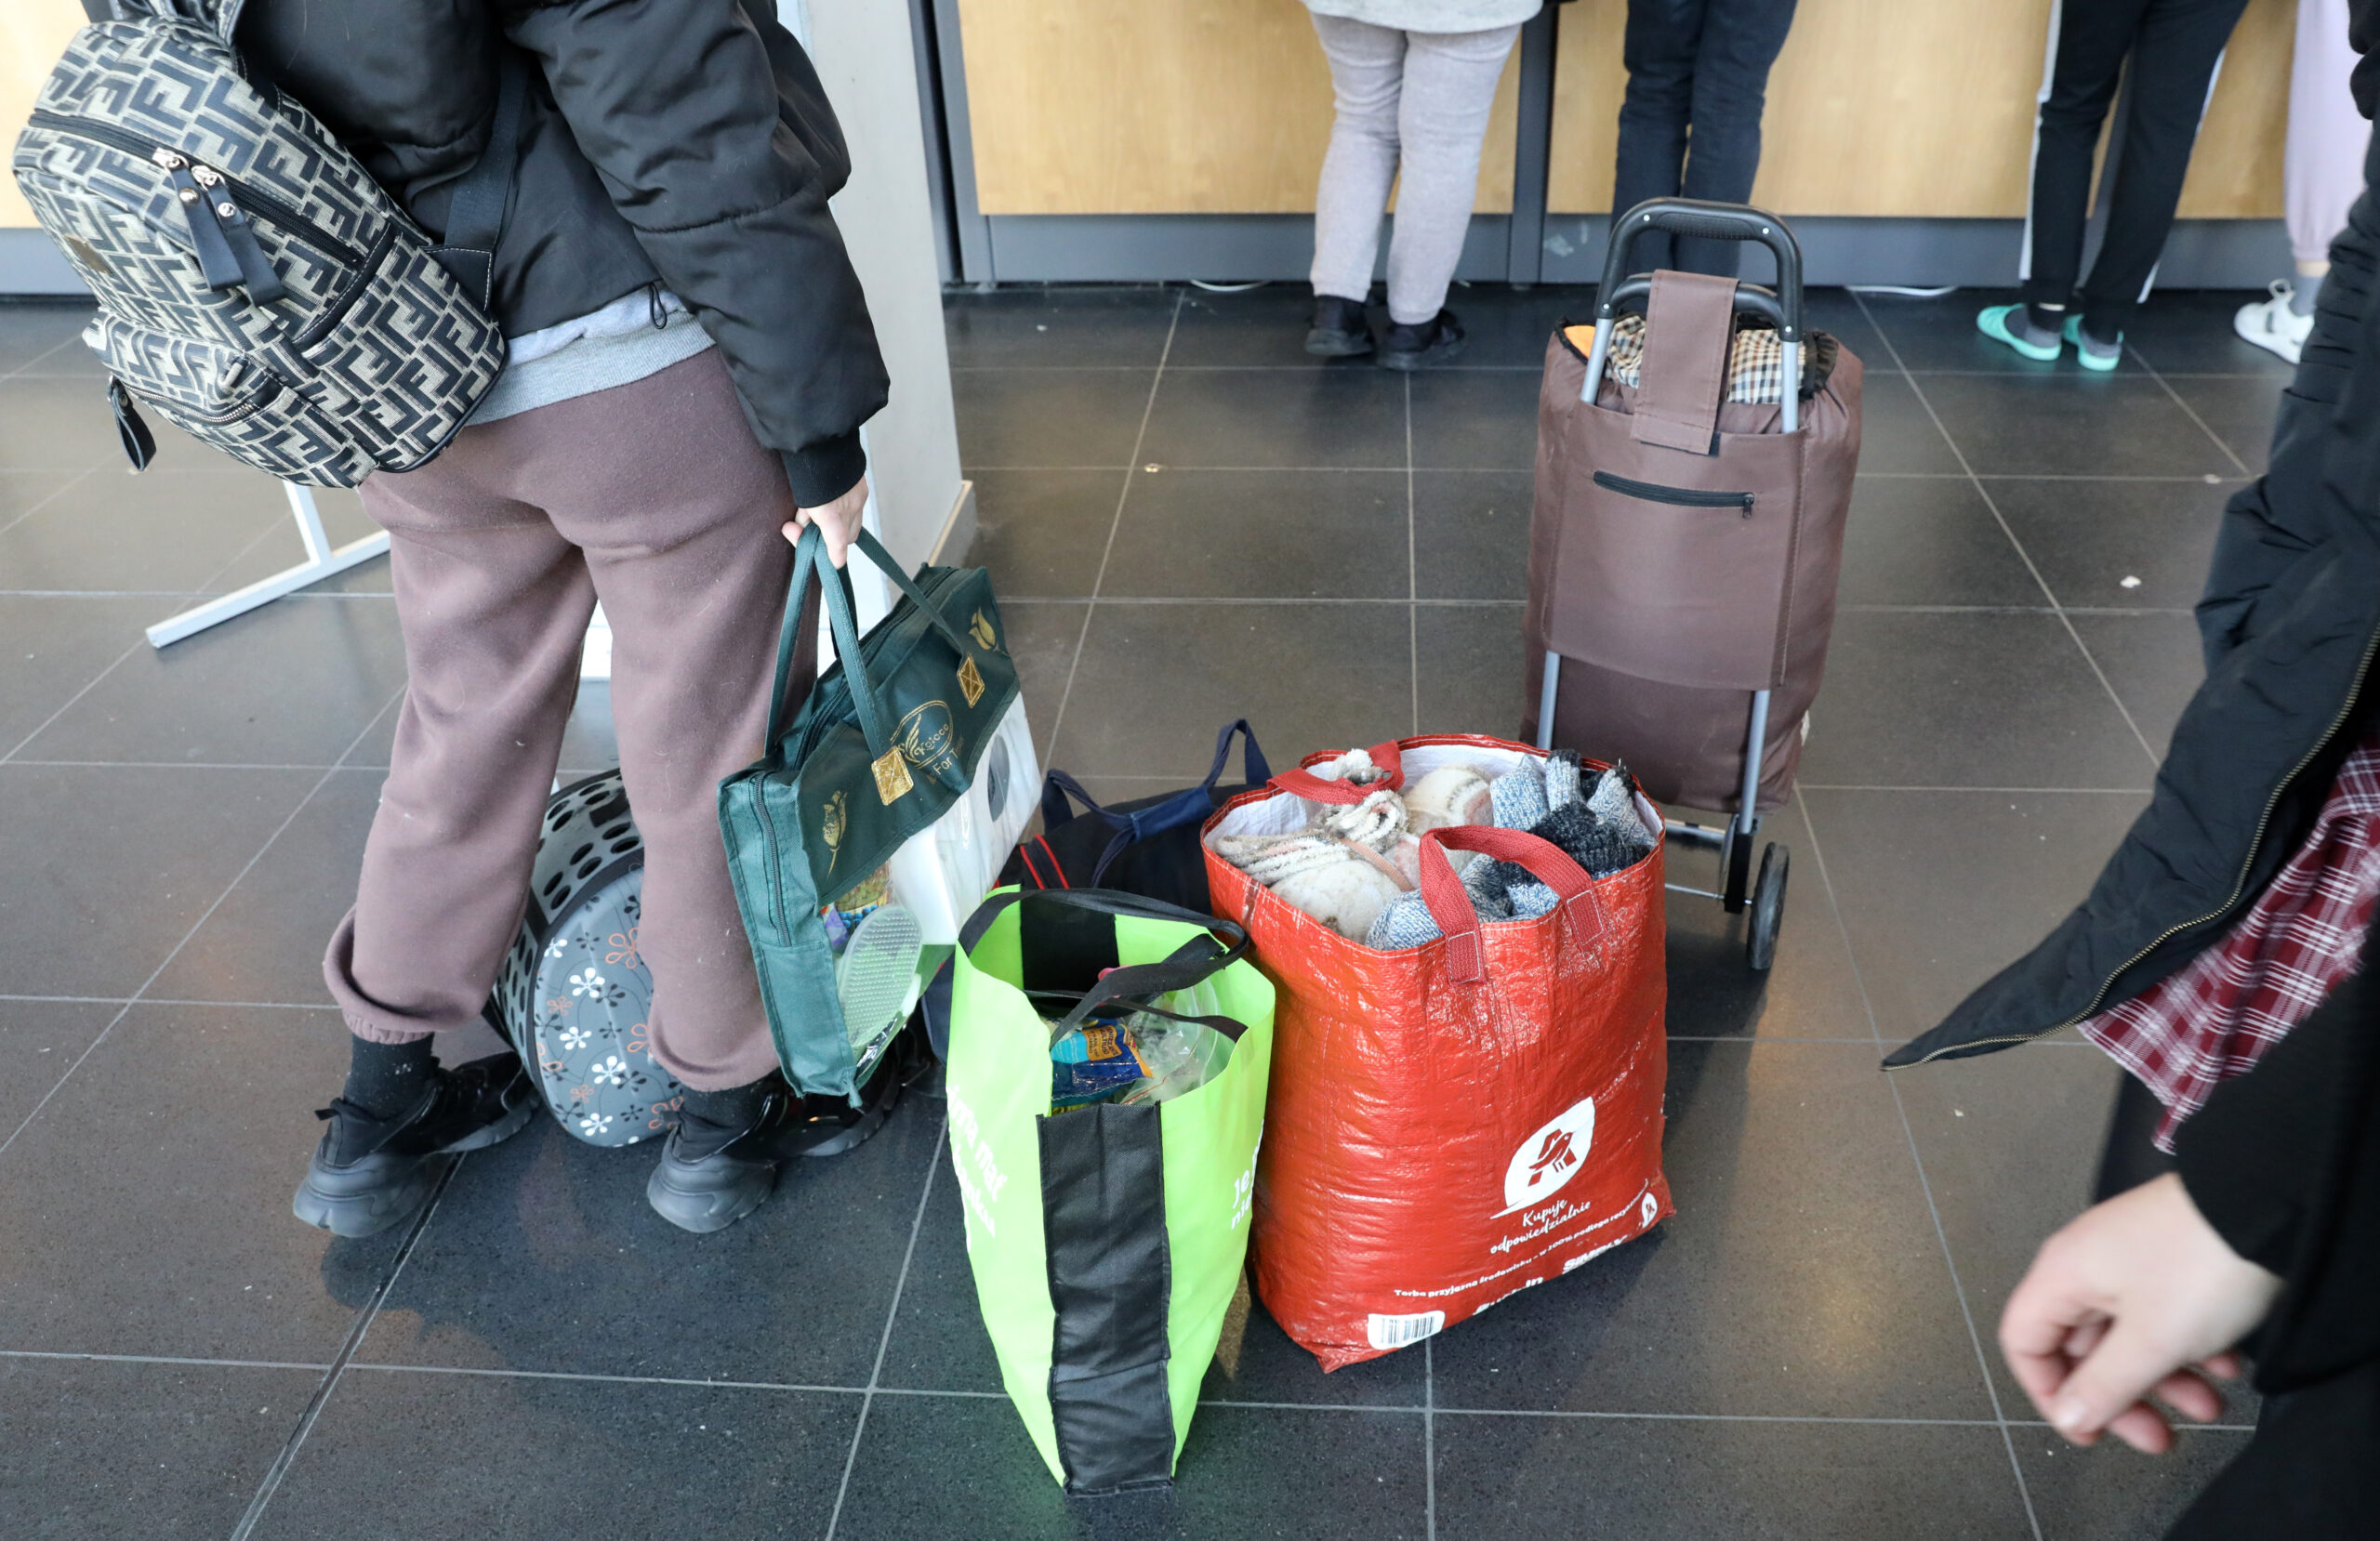 In der Hansemesse melden sich ankommende Flüchtlinge aus der Ukraine bei der Information, ihr Gepäck steht dabei auf dem Boden.